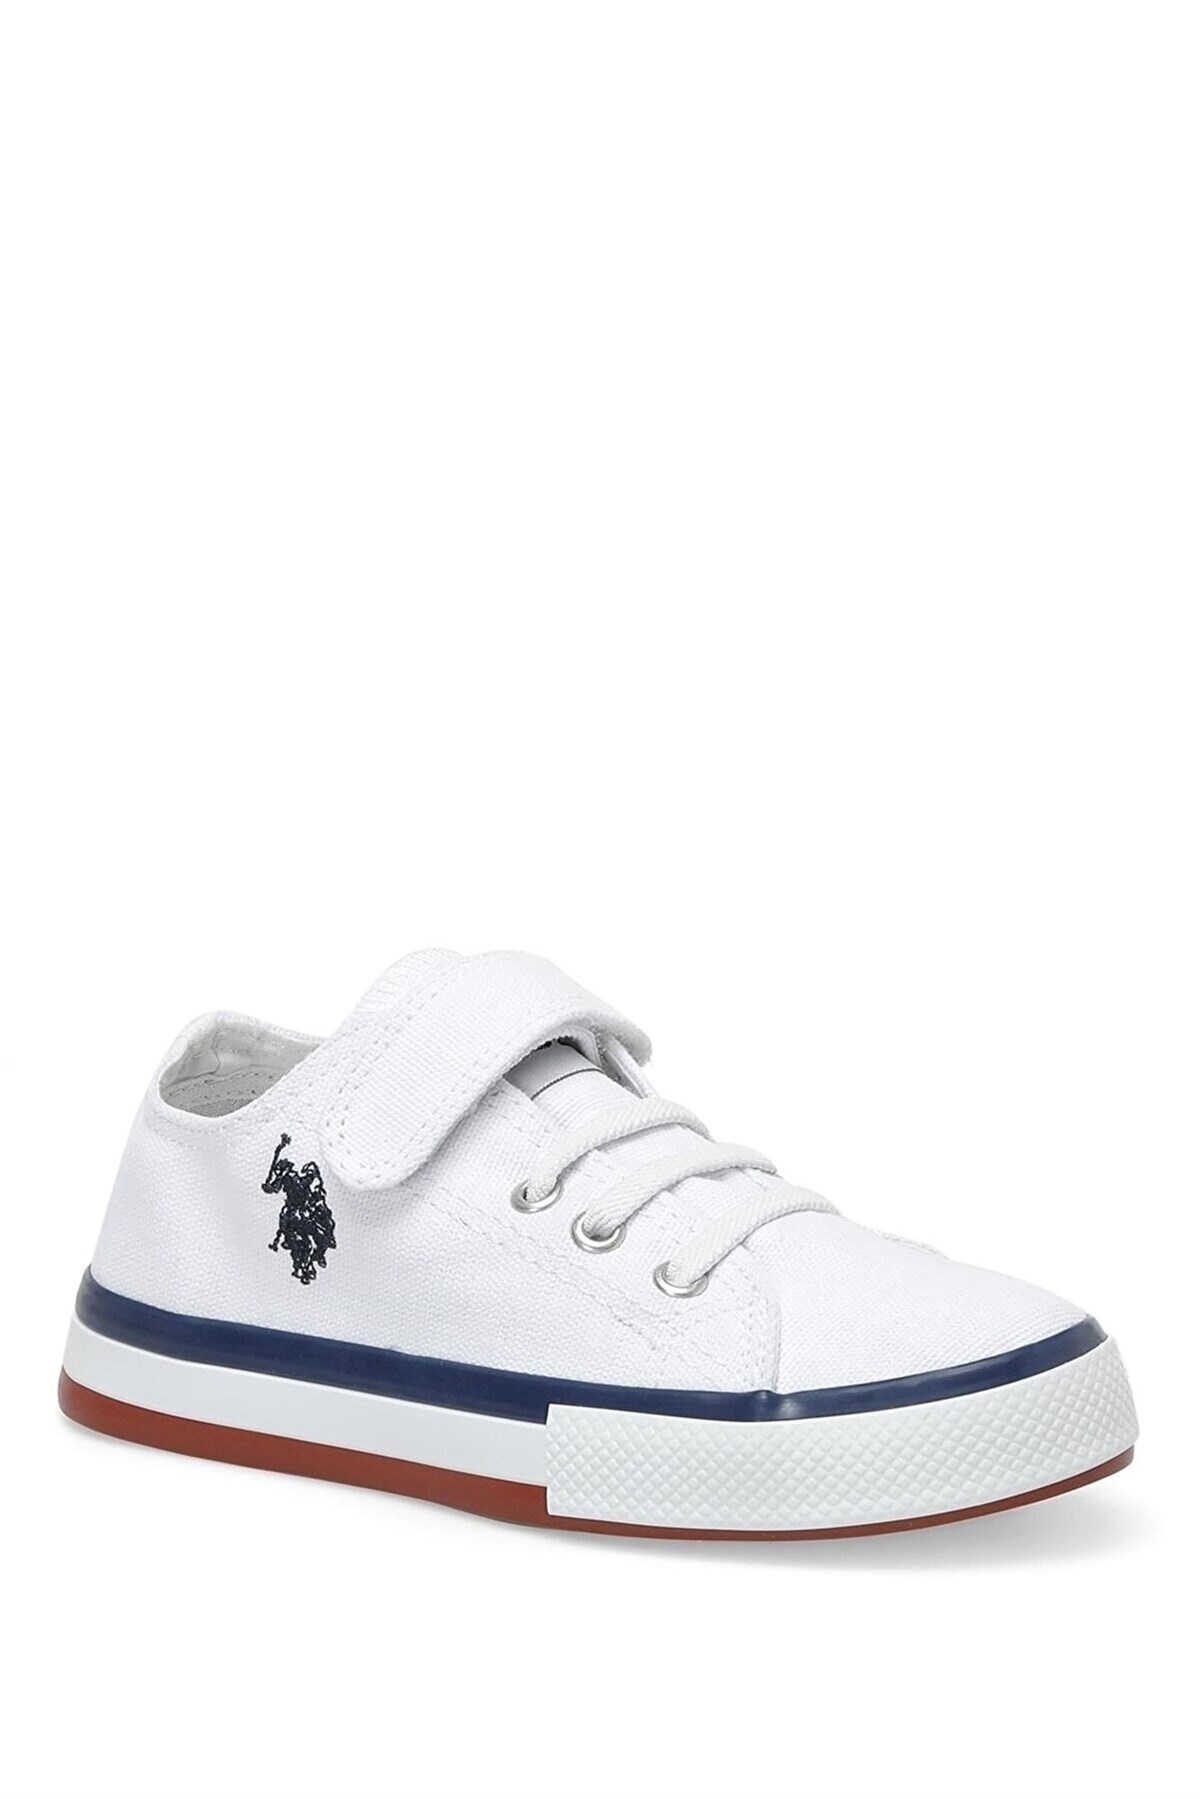 U.S. Polo Assn. Longo Çocuk Bez Spor Ayakkabı Beyaz 101110537